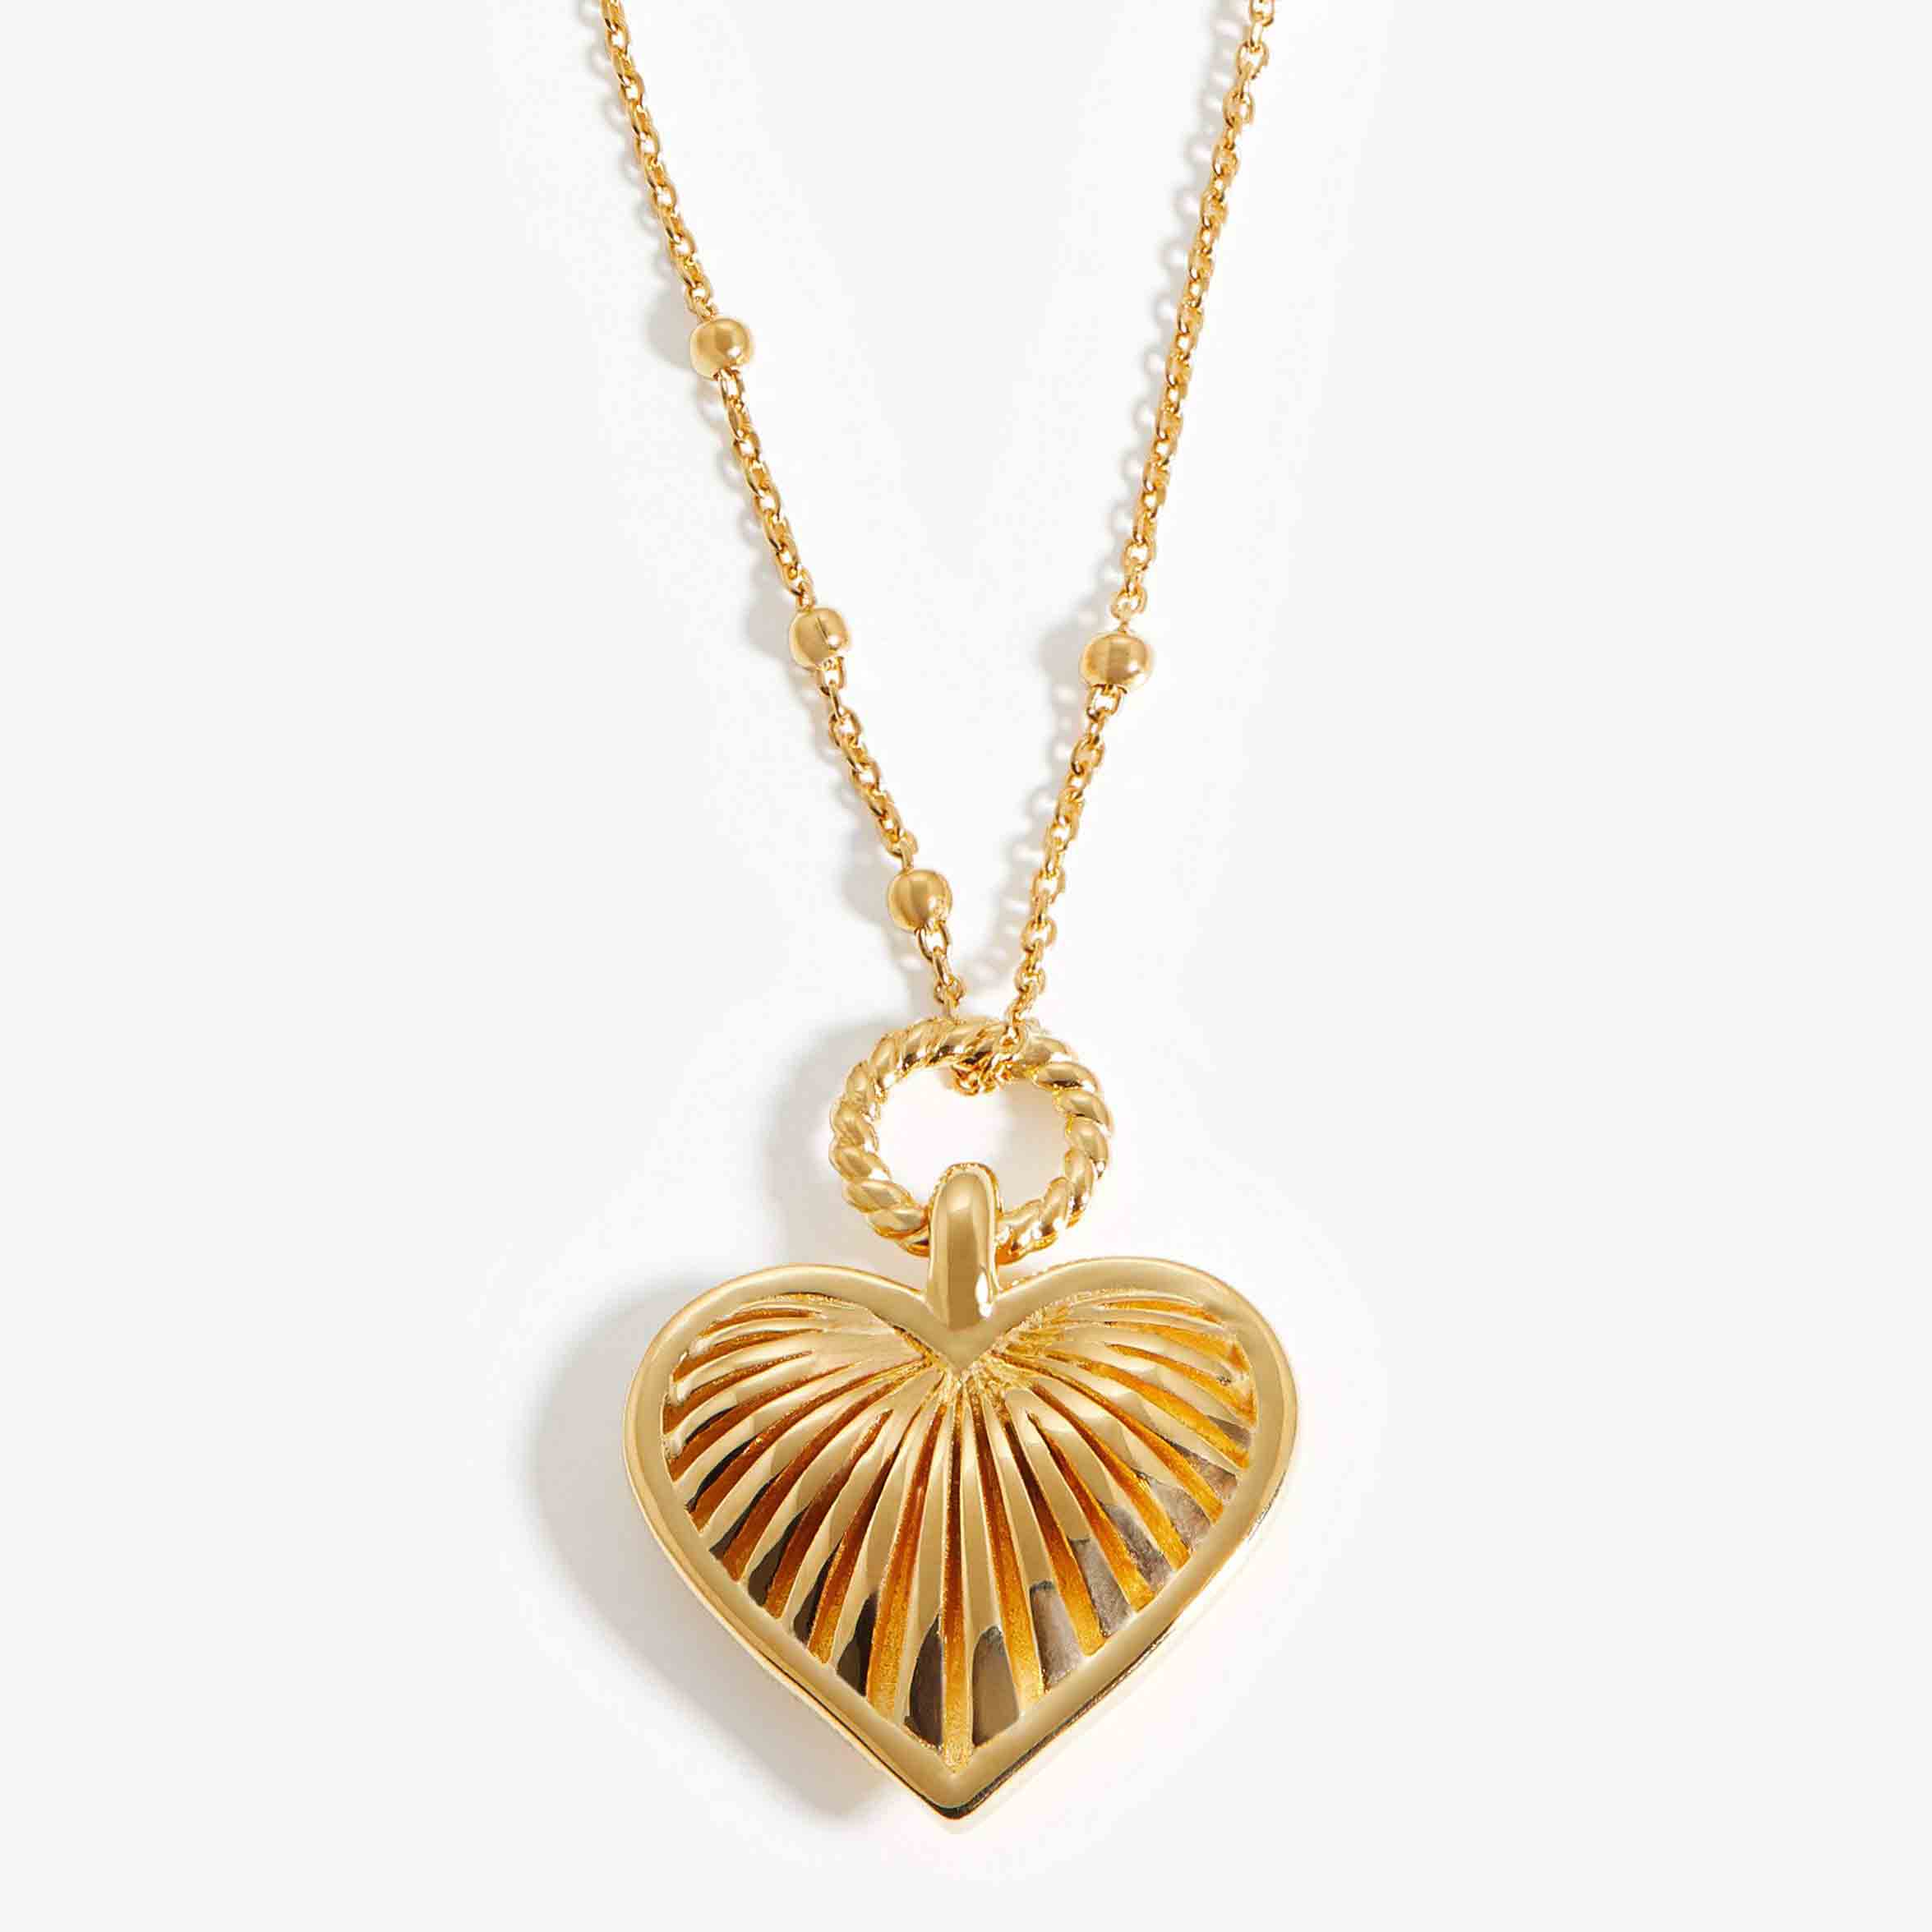 El fabricante de joyas de oro vermeil hace un collar con dije de corazón en plata chapada en oro de 18k